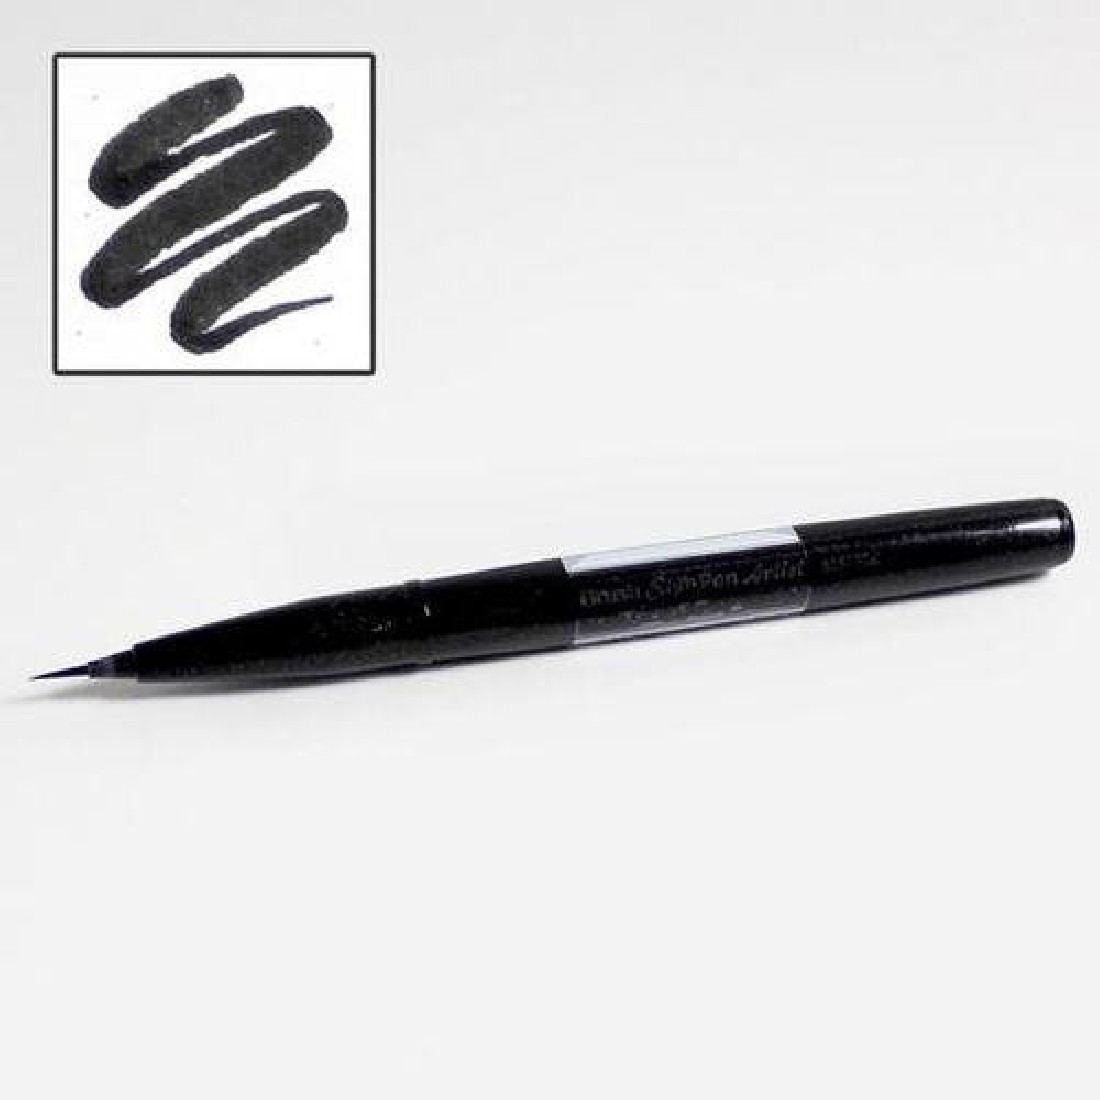 Pentel Artist Brush Sign Pen ultra fine- Black